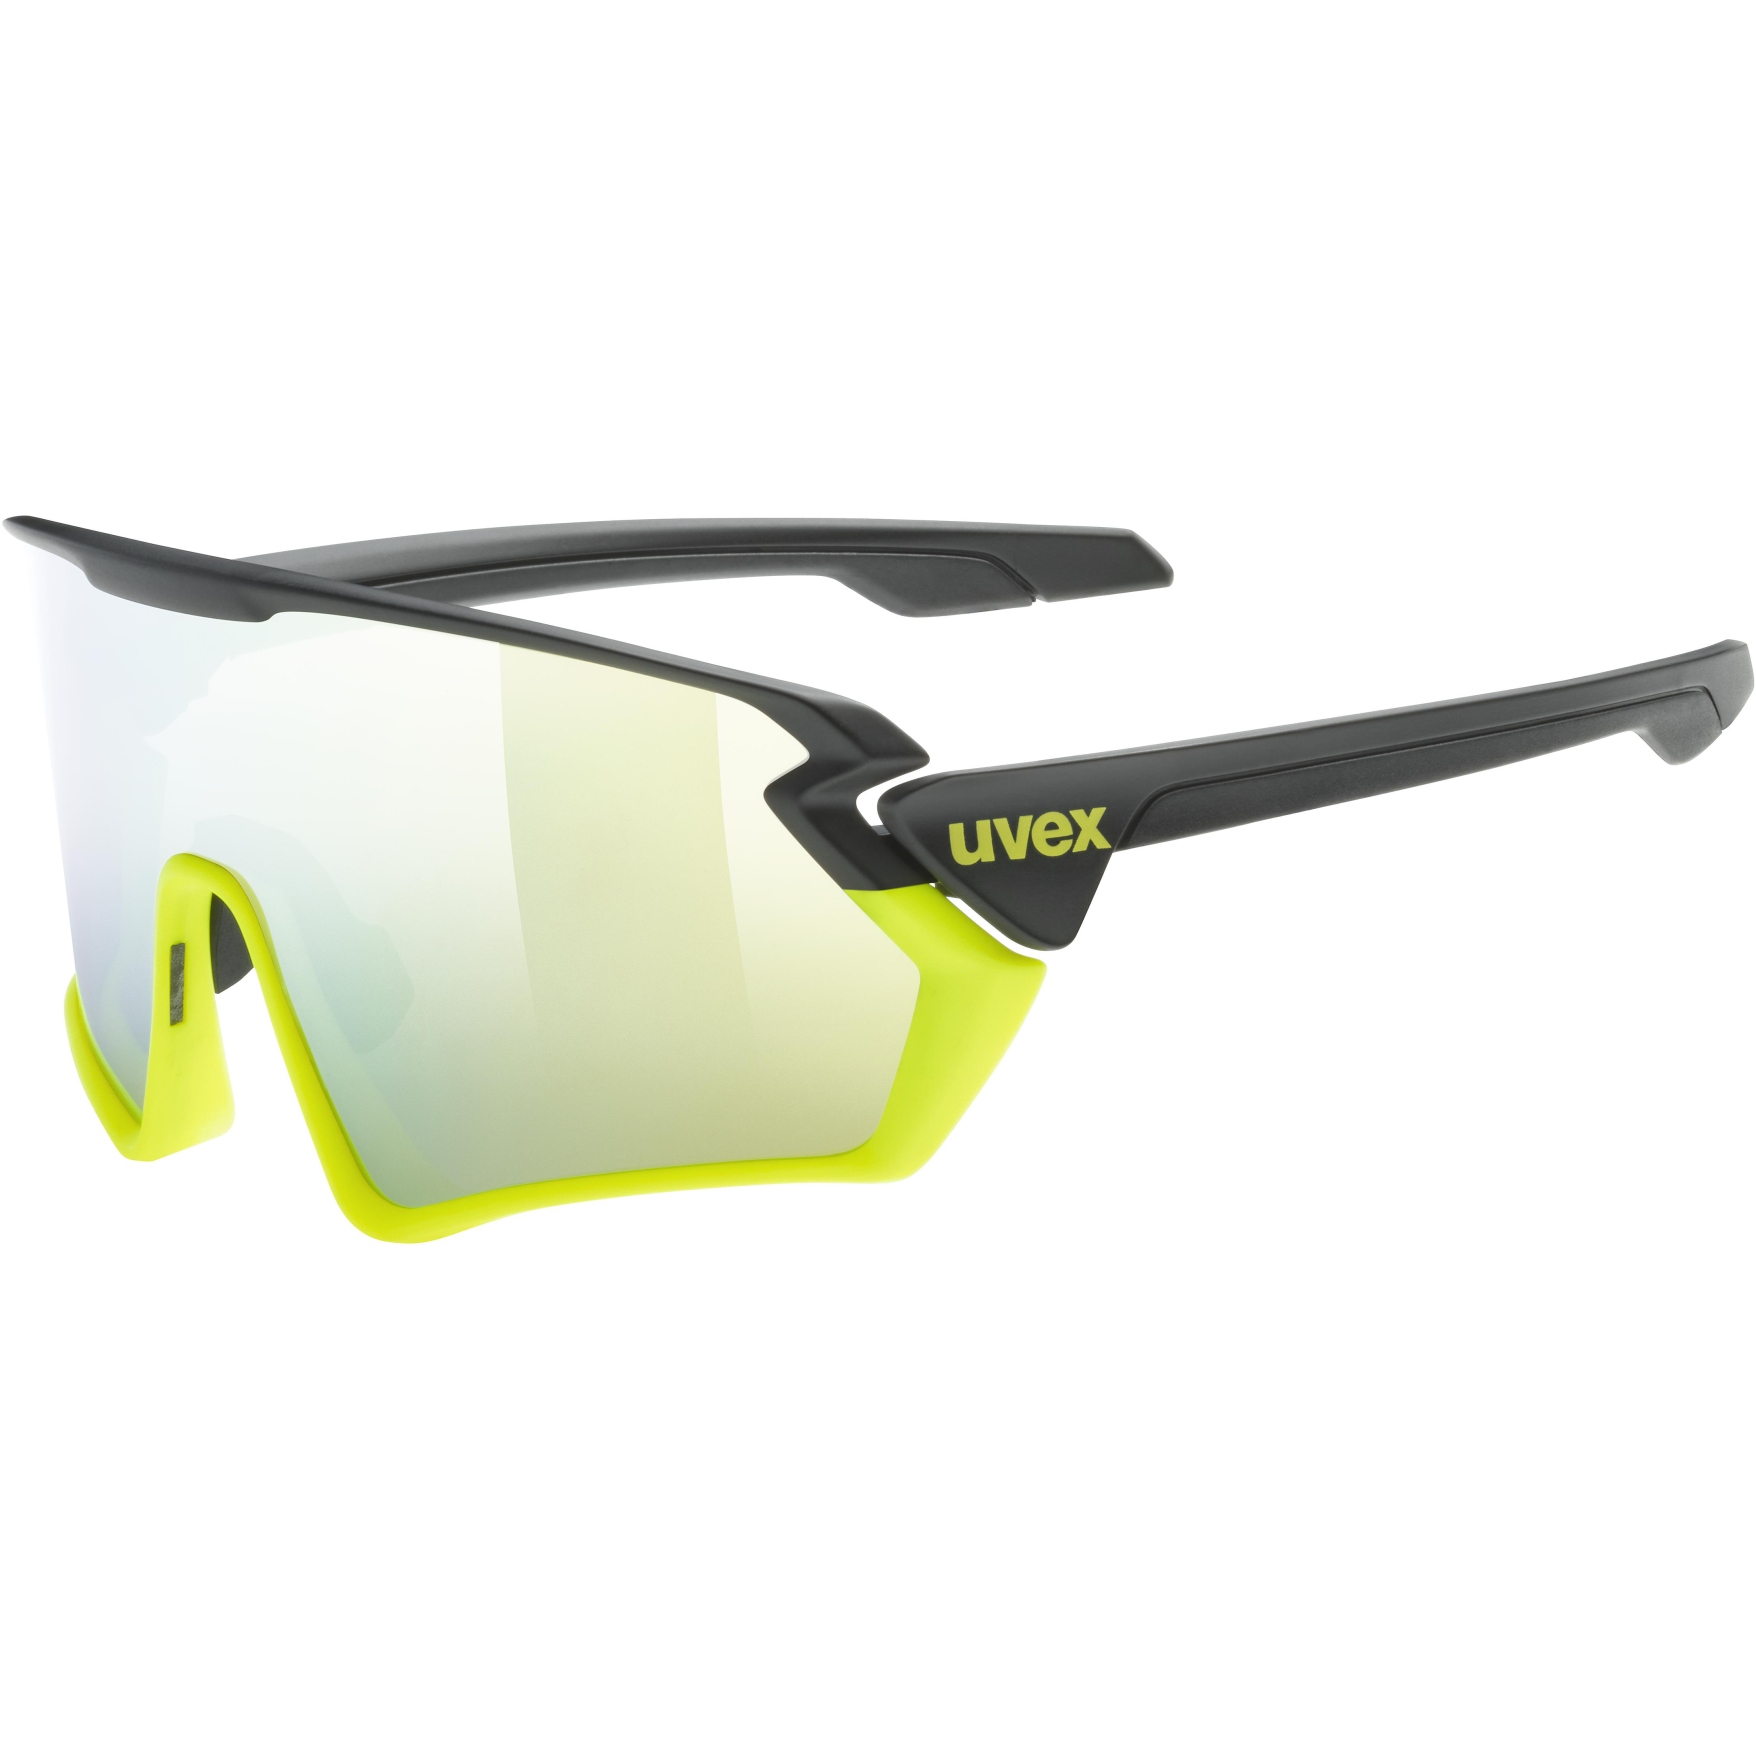 Produktbild von Uvex sportstyle 231 Brille - black yellow mat/mirror yellow